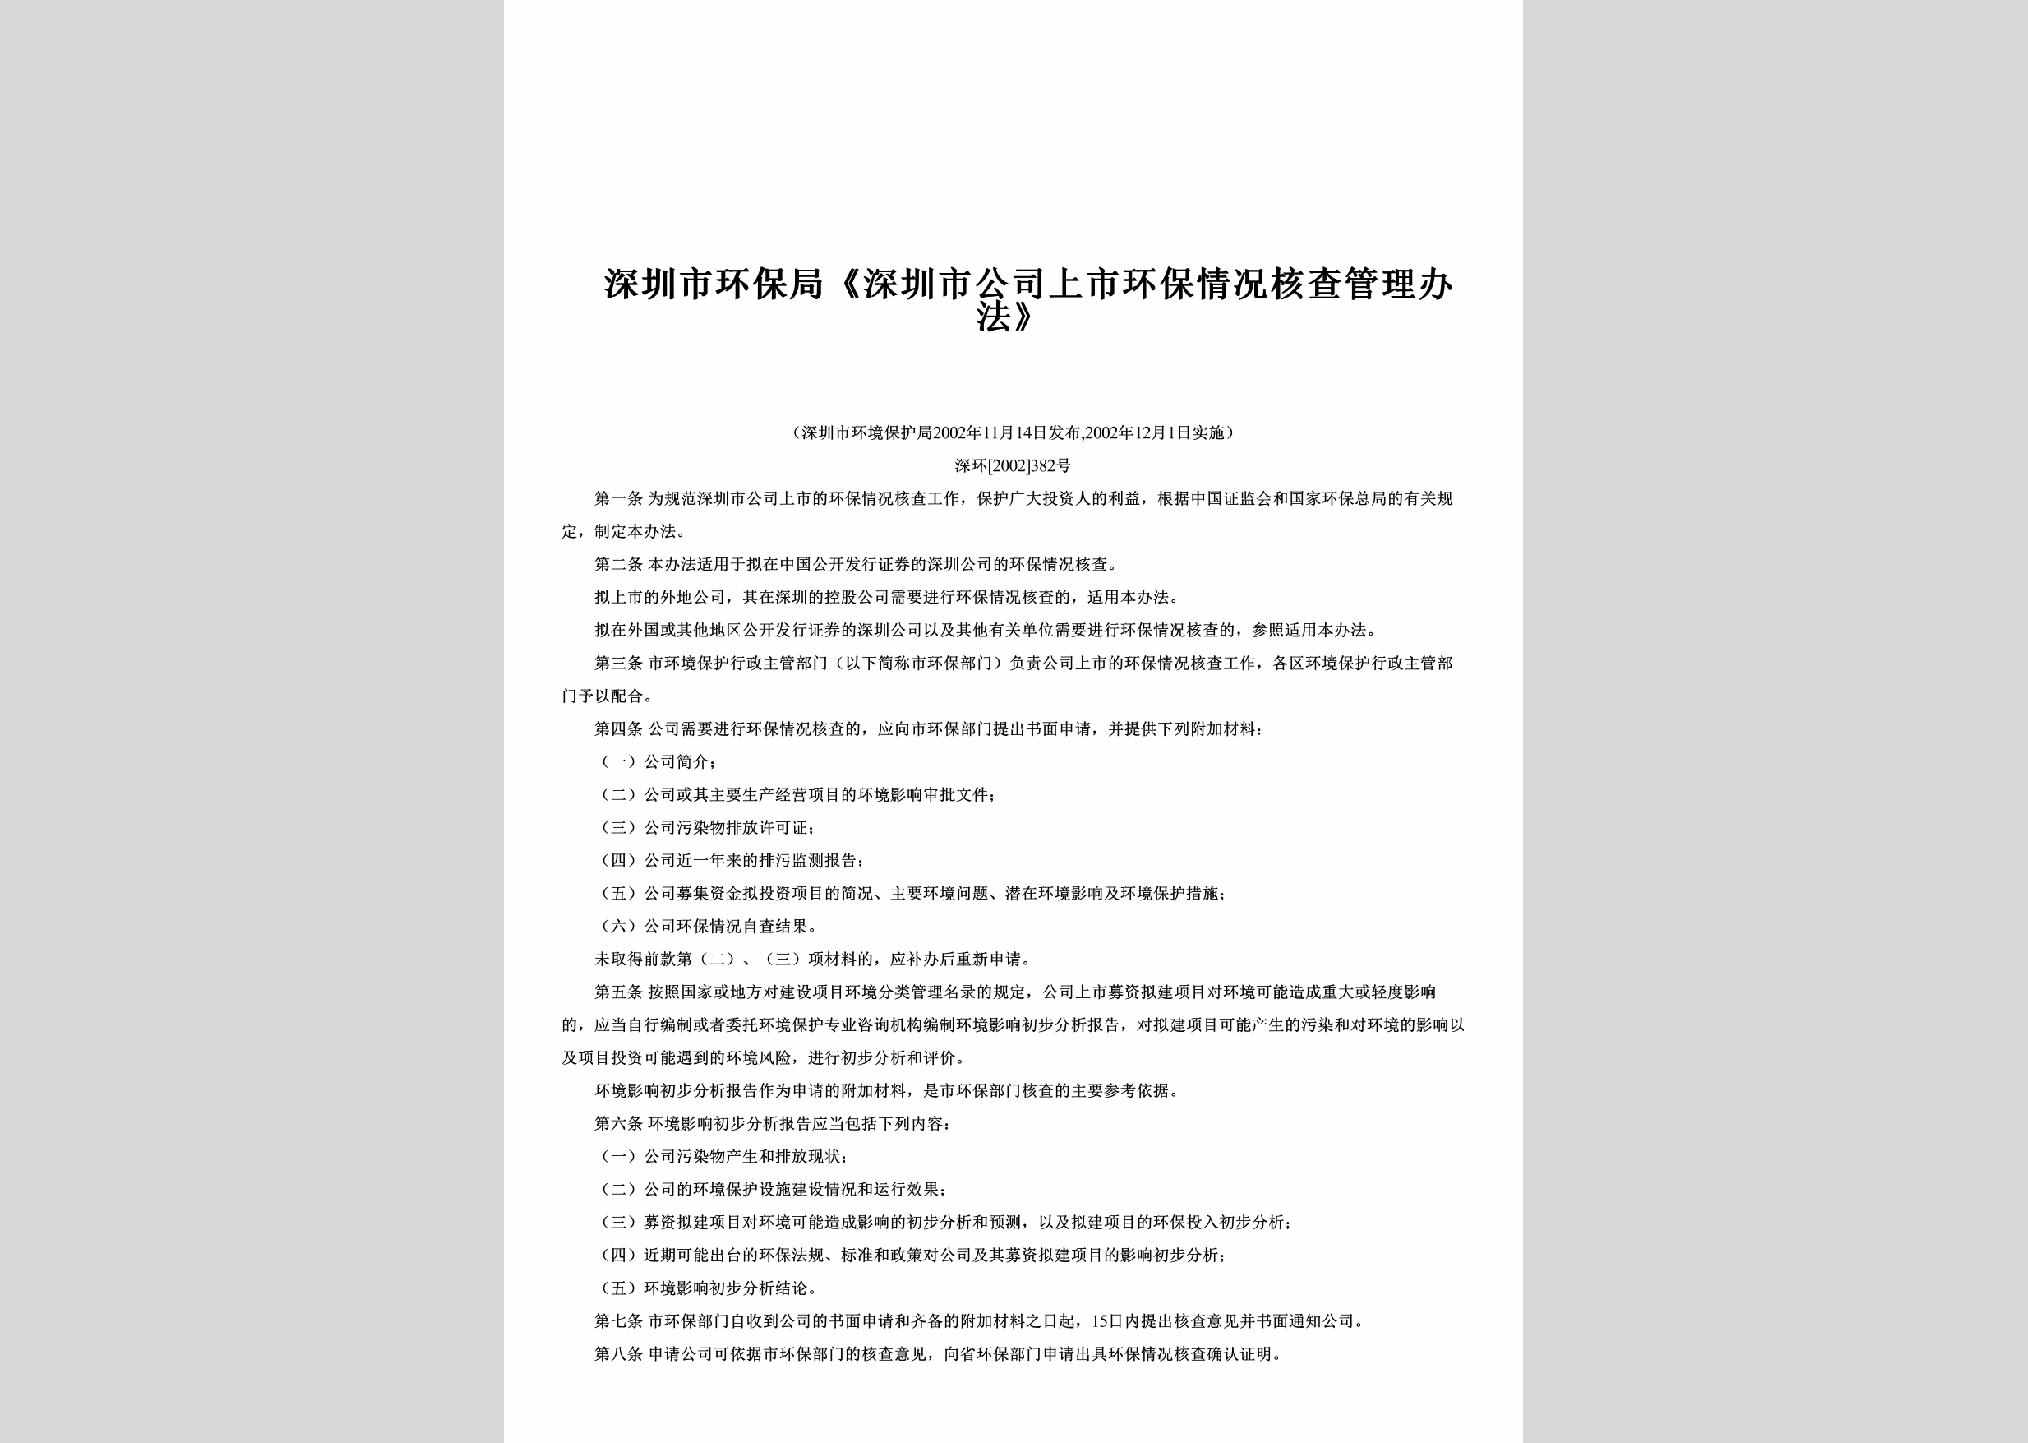 深环[2002]382号：《深圳市公司上市环保情况核查管理办法》